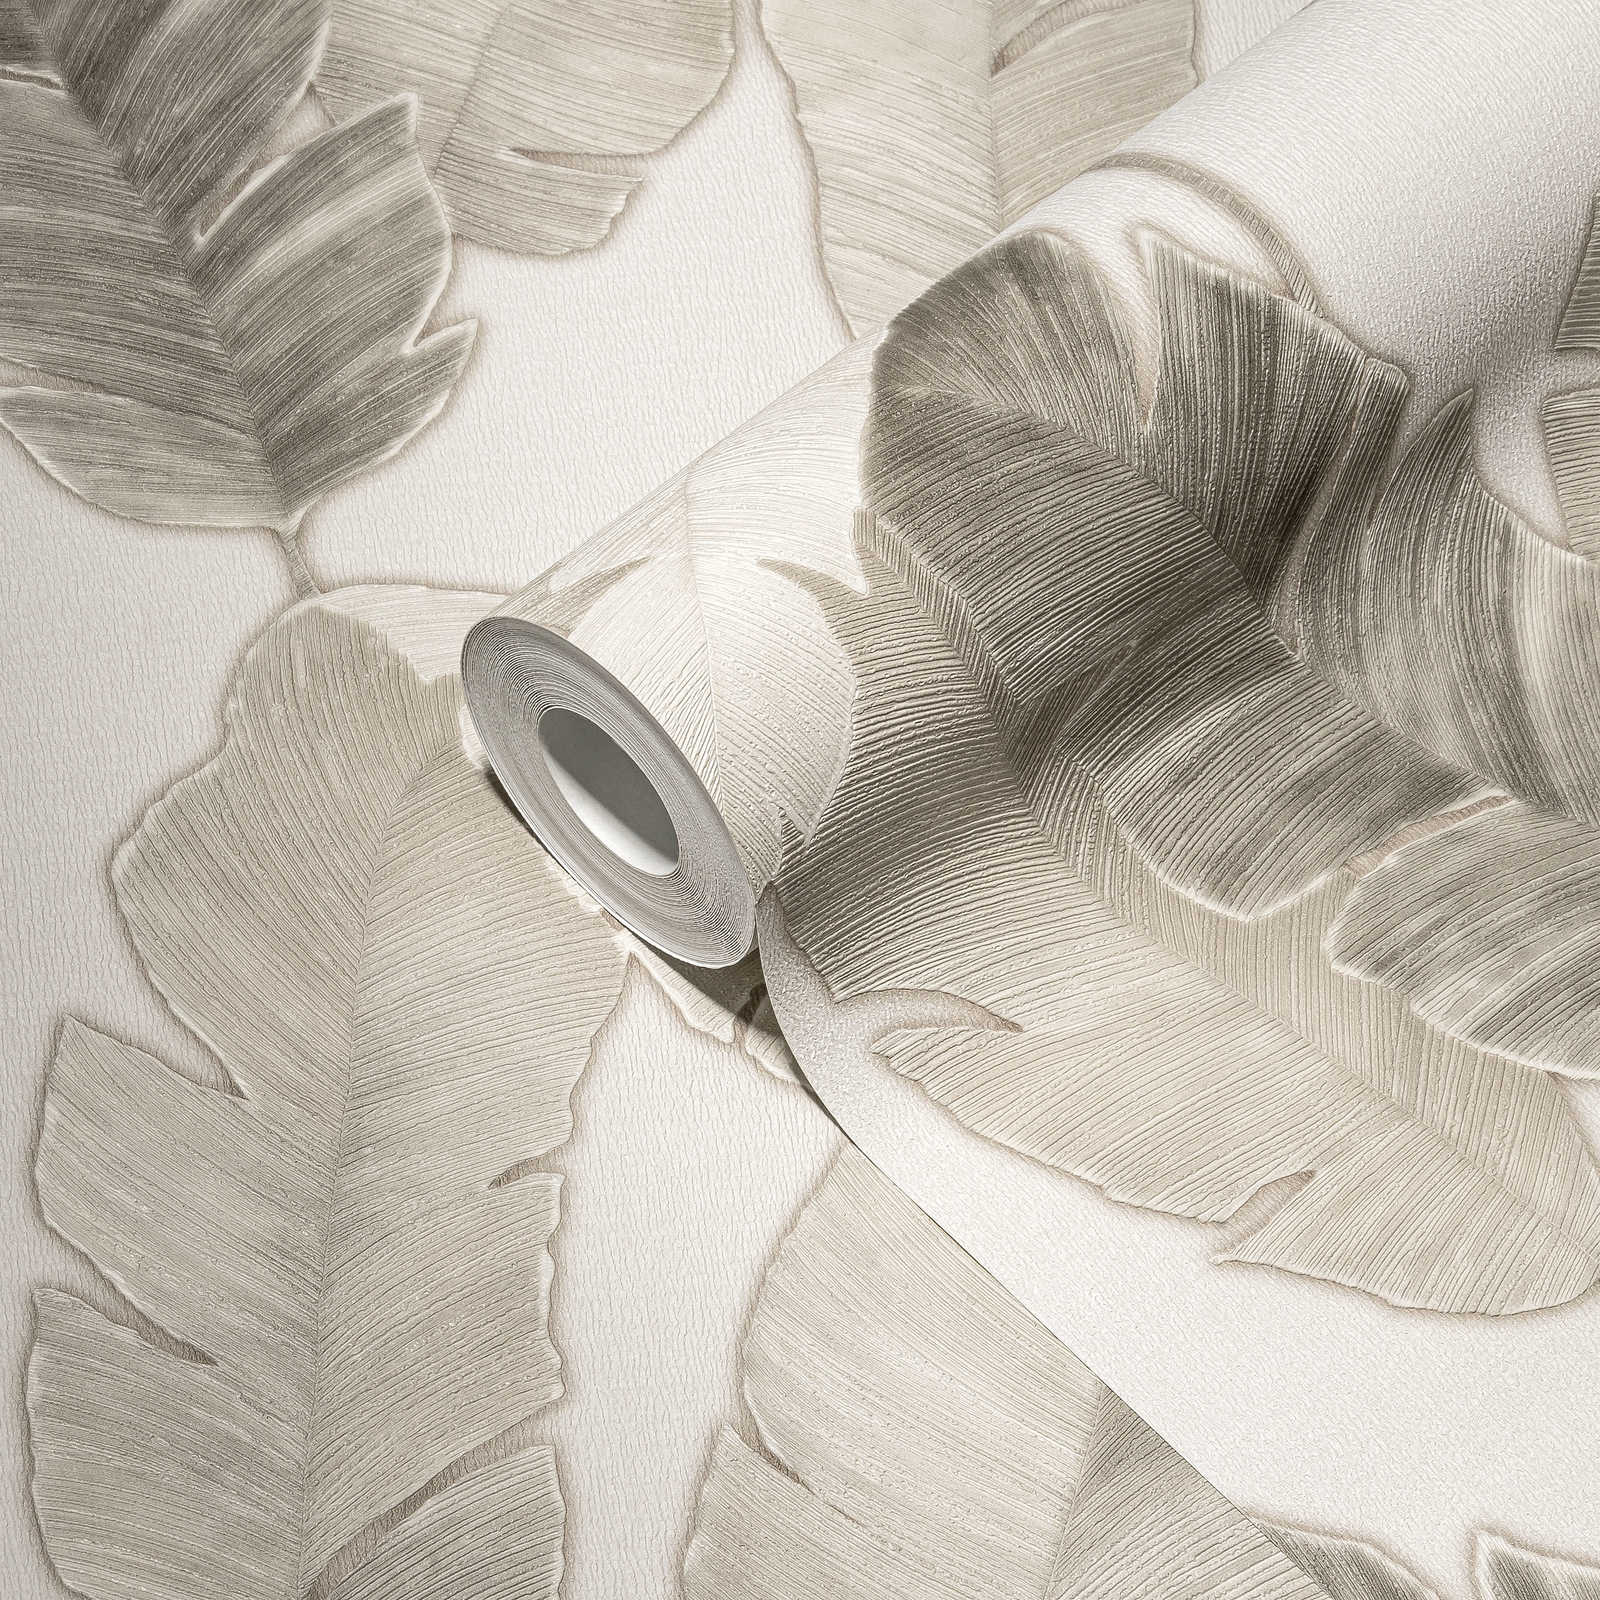             Papel pintado no tejido con sutiles hojas de palmera - blanco, beige, gris
        